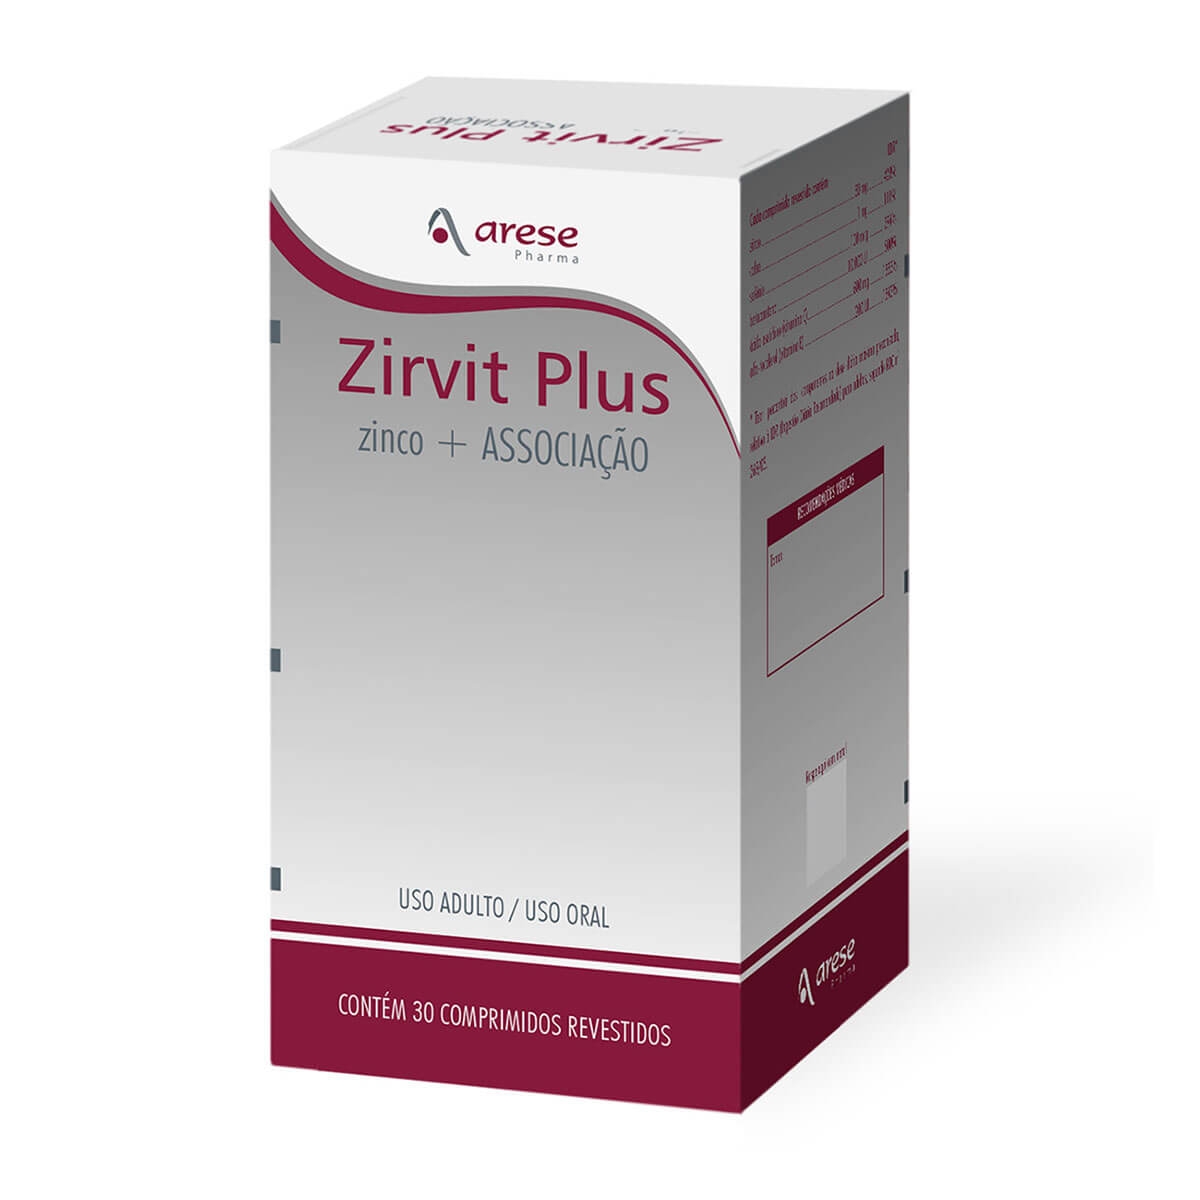 Suplemento Vitamínico e Mineral Zirvit Plus com 30 comprimidos